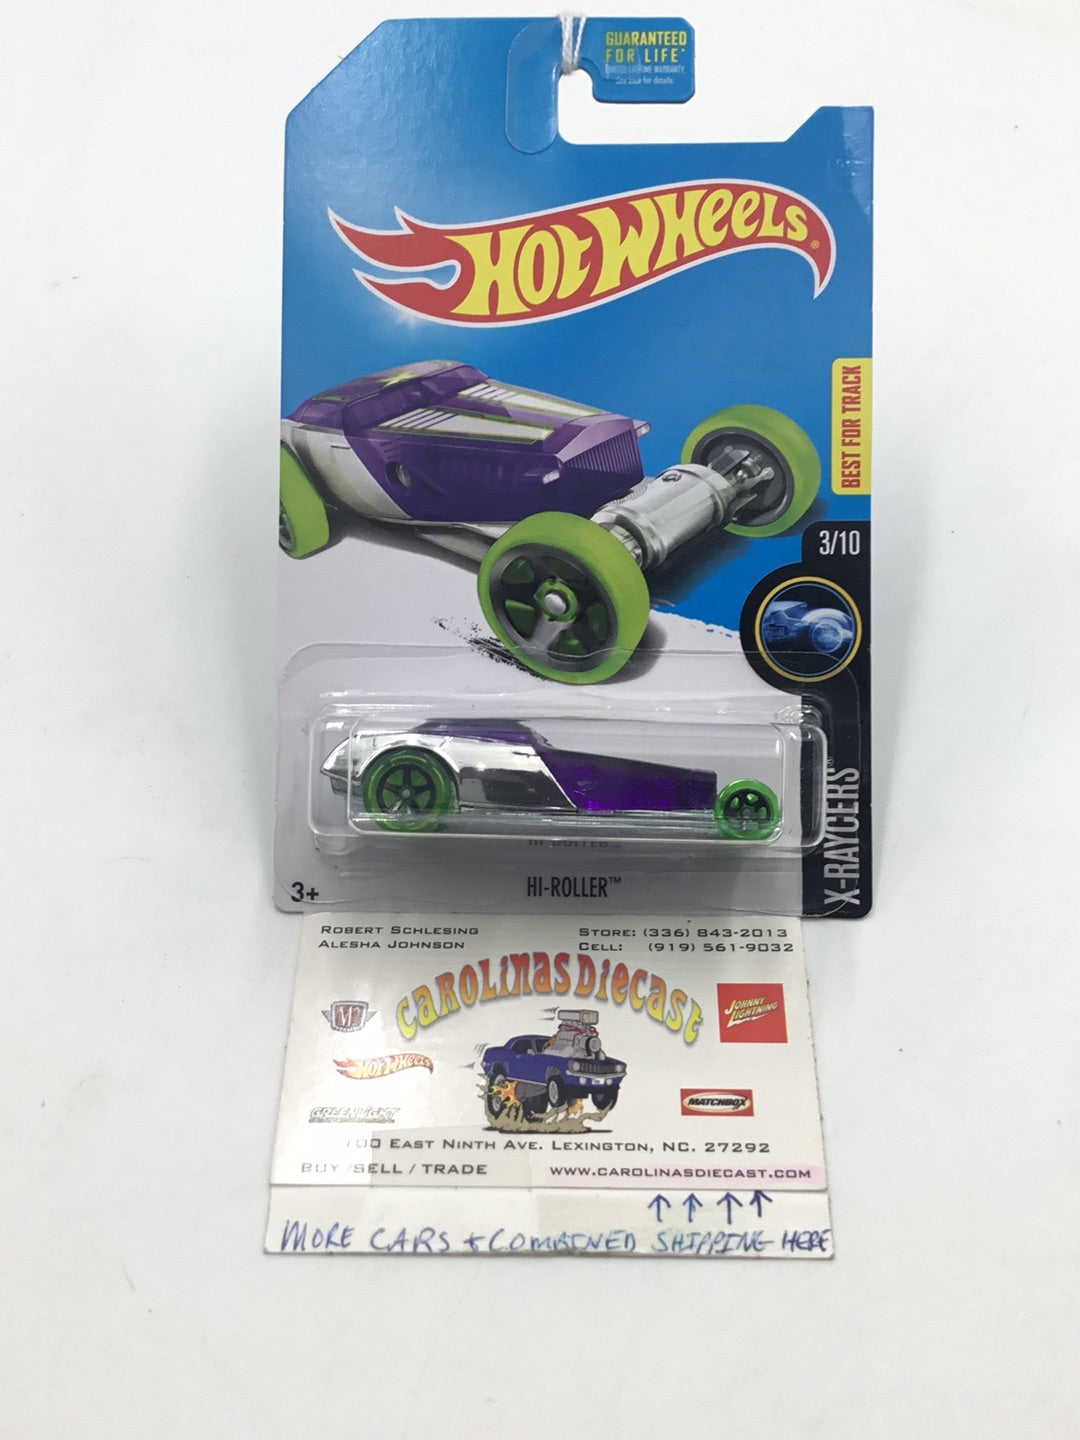 2017 Hot Wheels Kmart Exclusive Hi-Roller